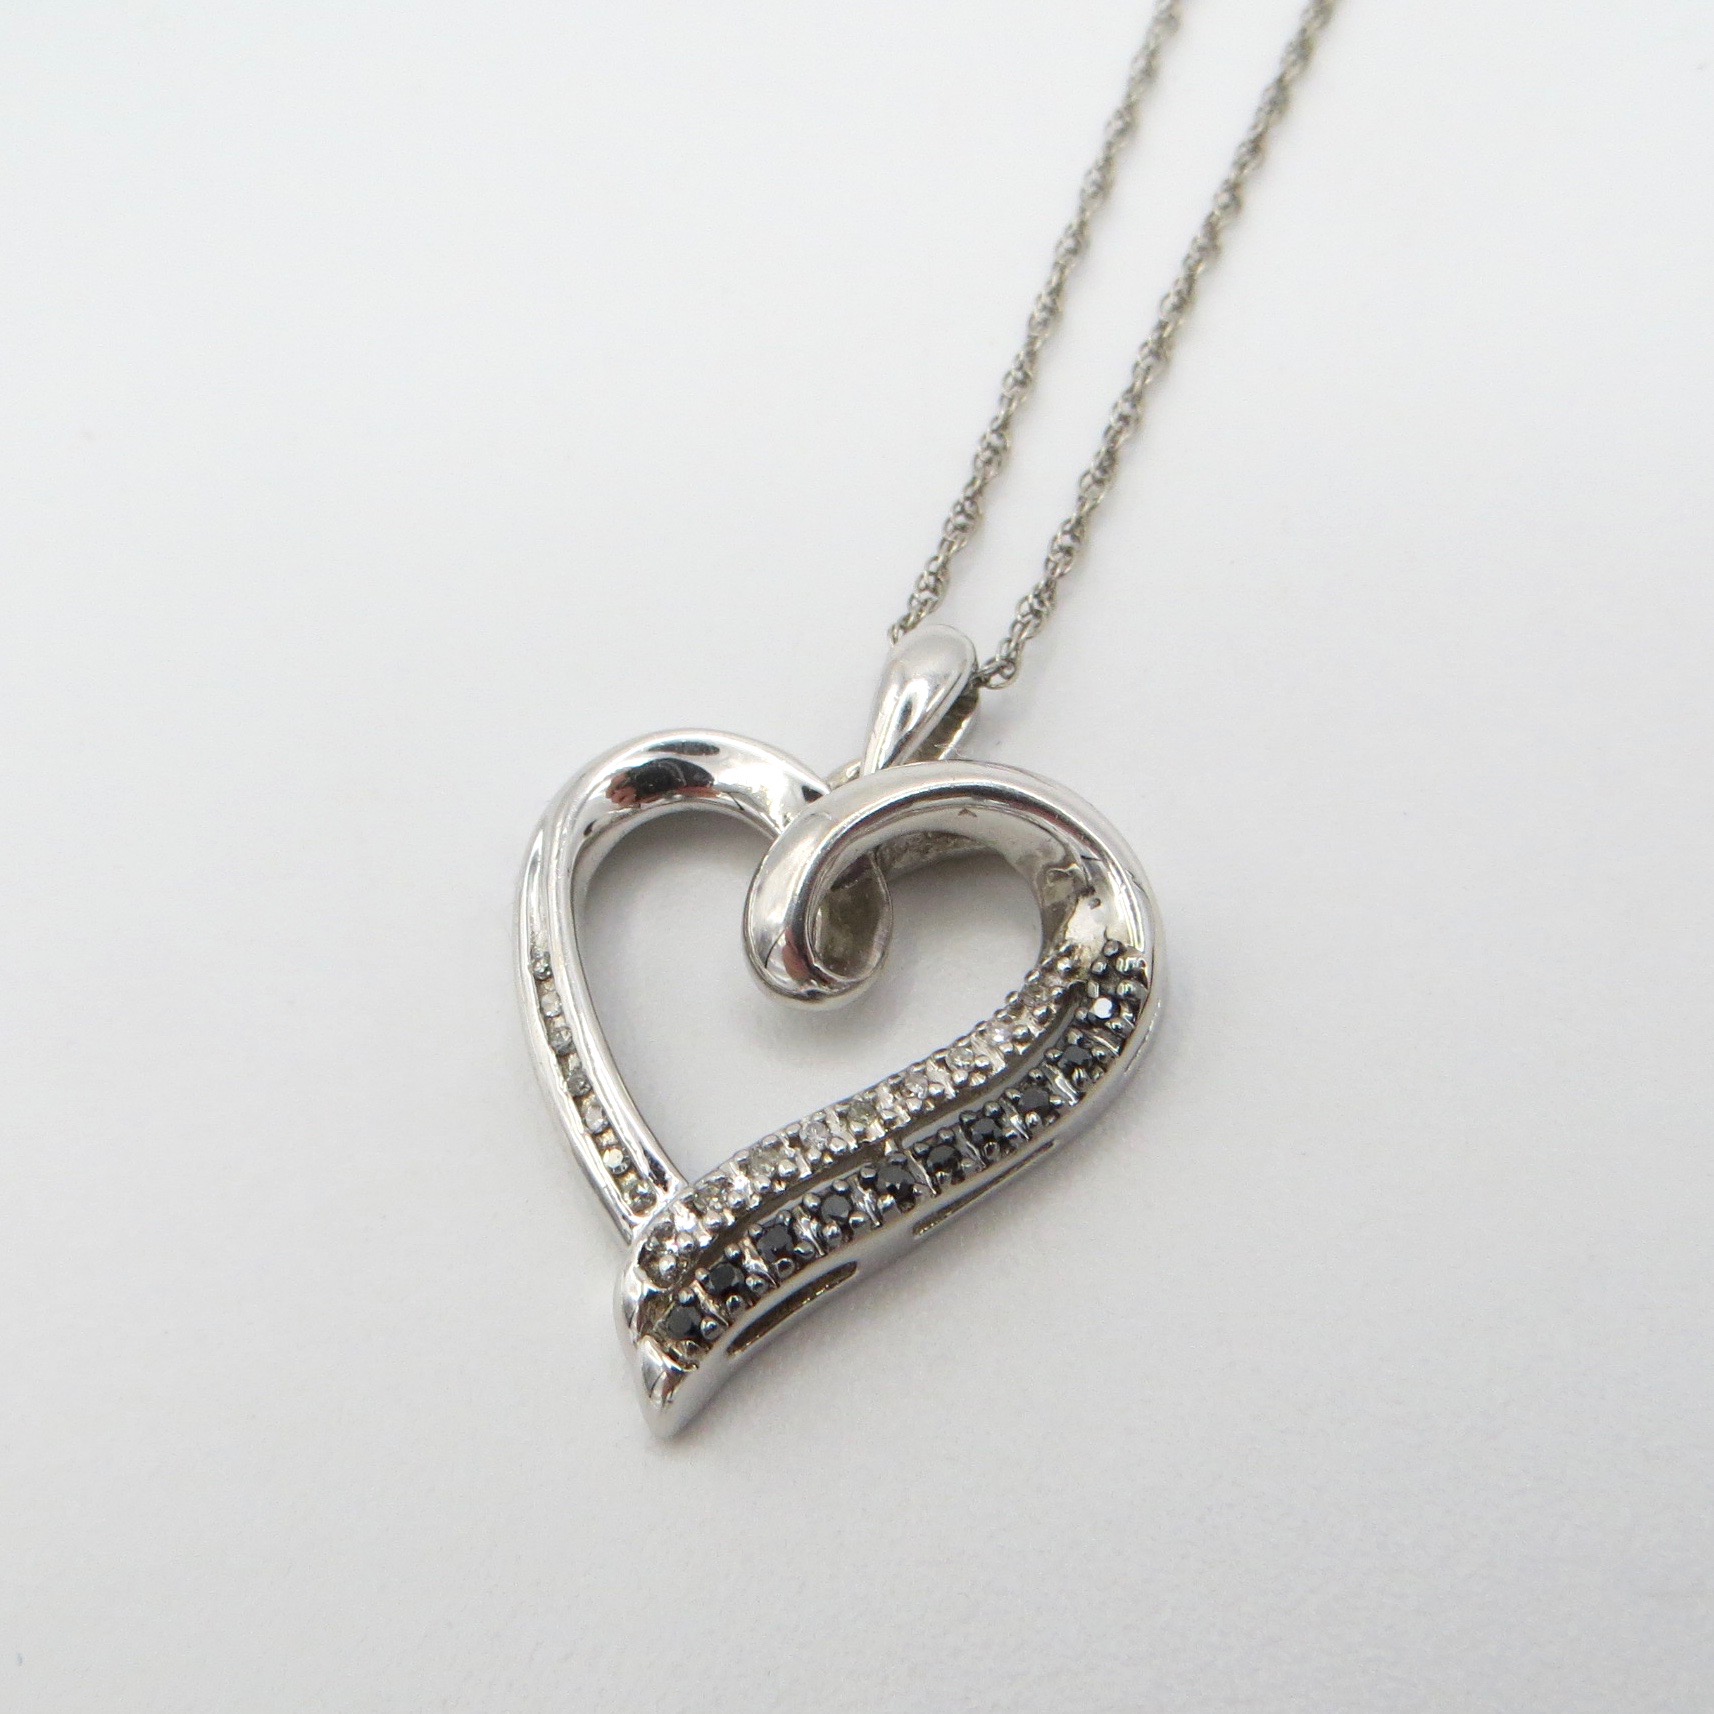 Dark & Light Silver & Crystal Heart Necklace